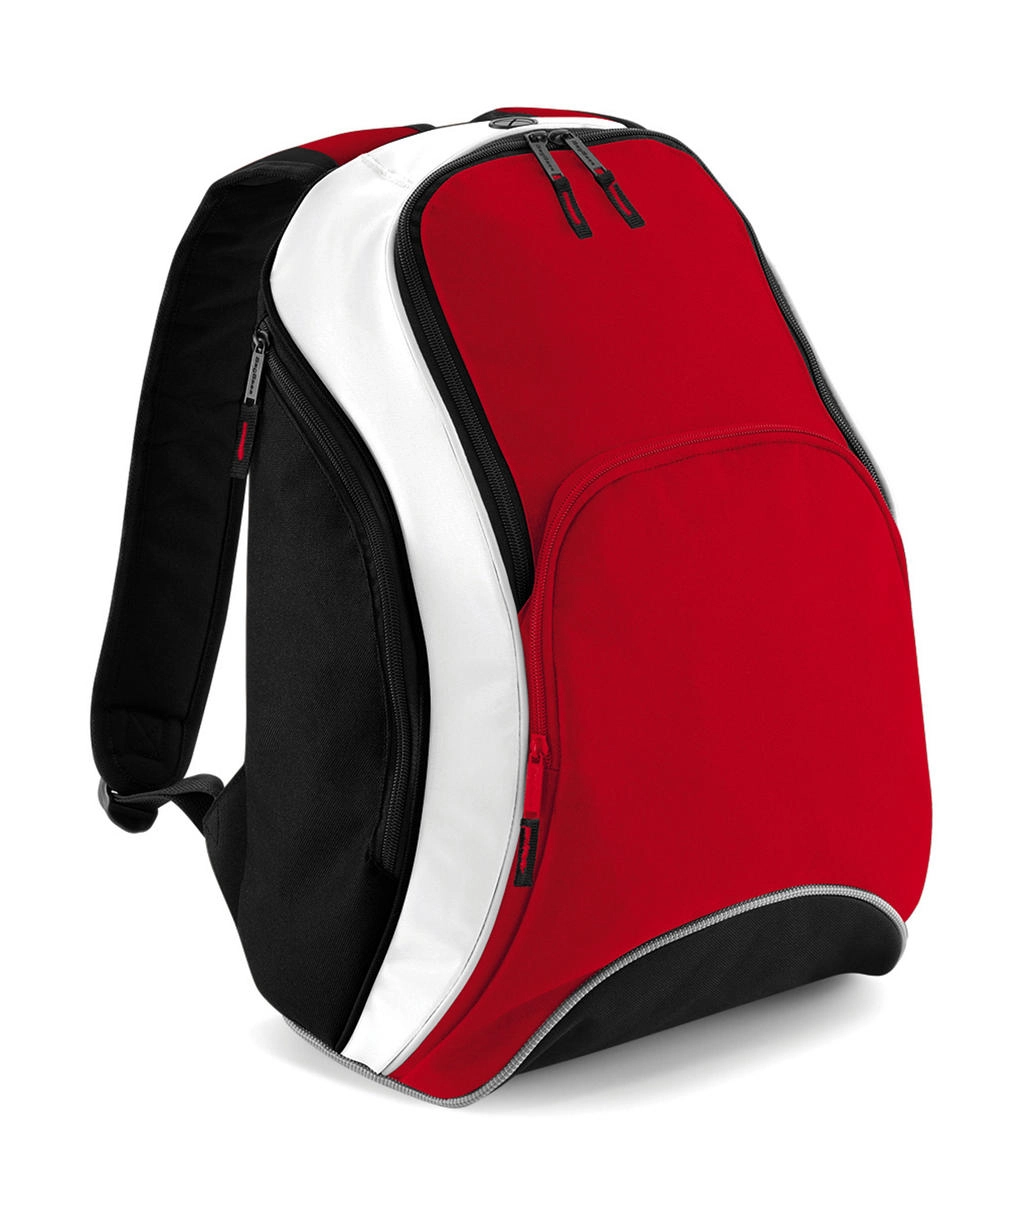 Teamwear Backpack zum Besticken und Bedrucken in der Farbe Classic Red/Black/White mit Ihren Logo, Schriftzug oder Motiv.